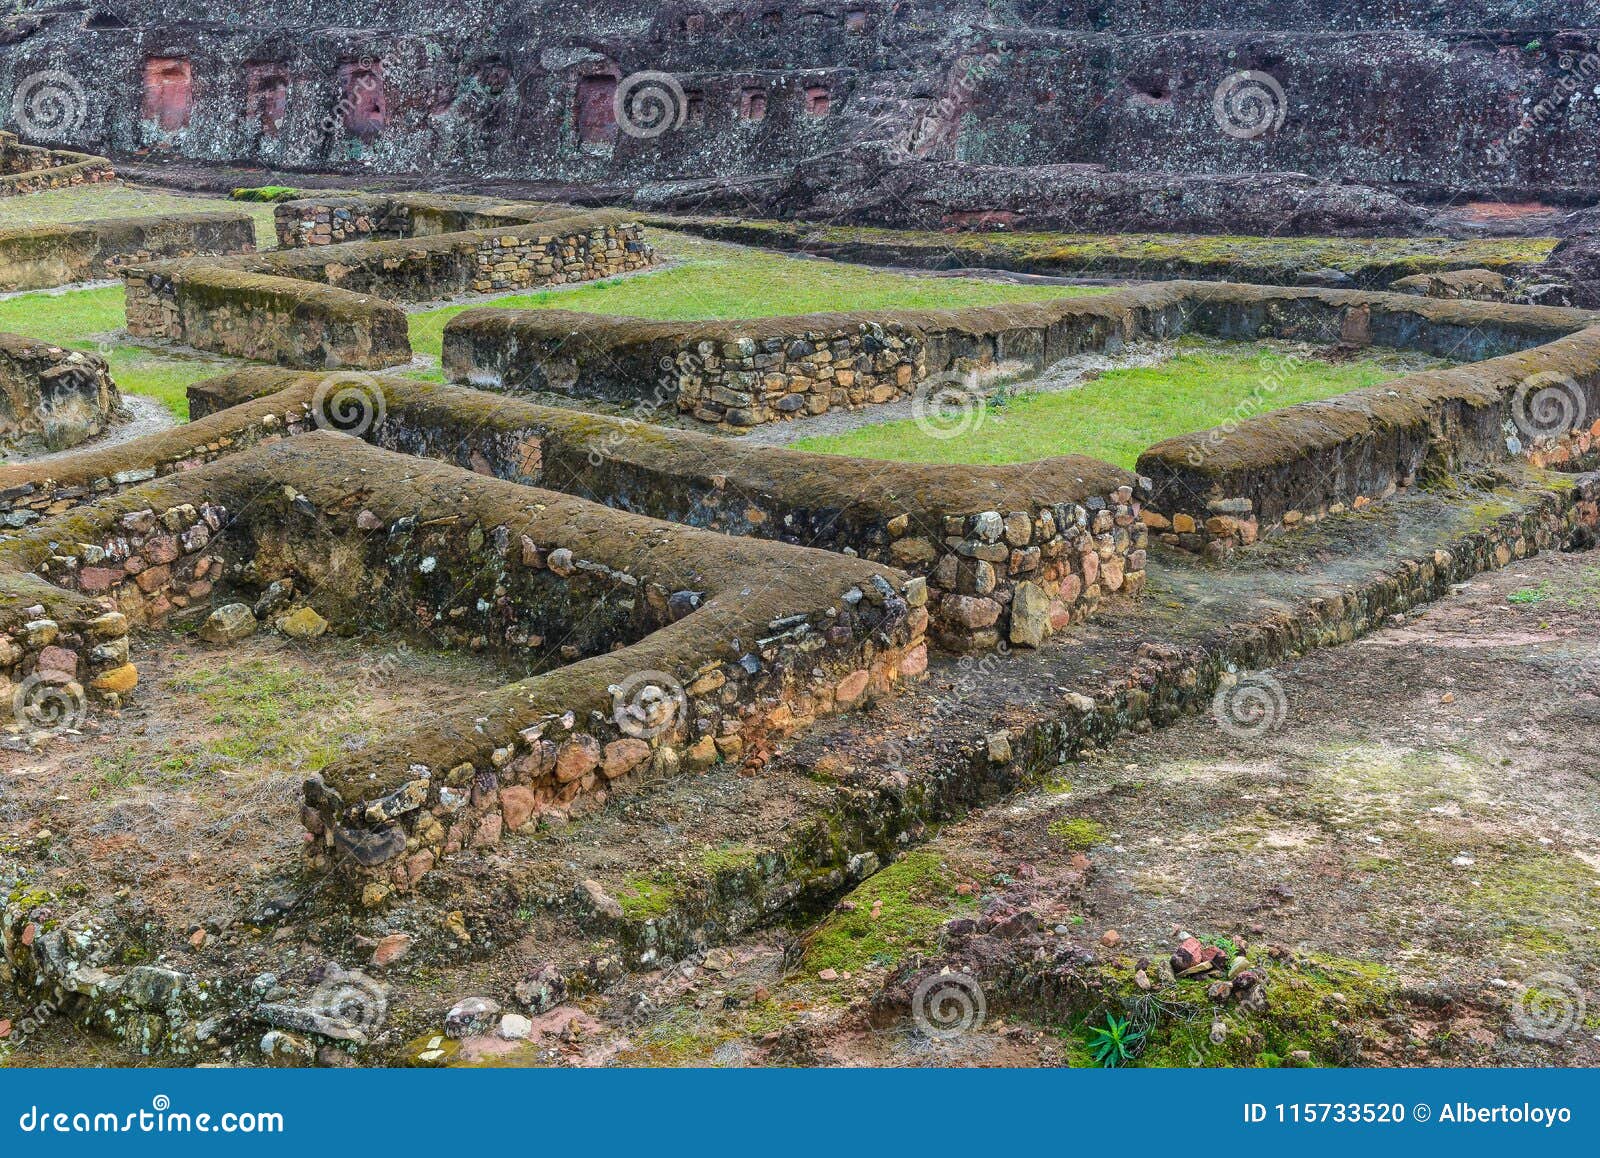 archaeological site of el fuerte de samaipata, bolivia